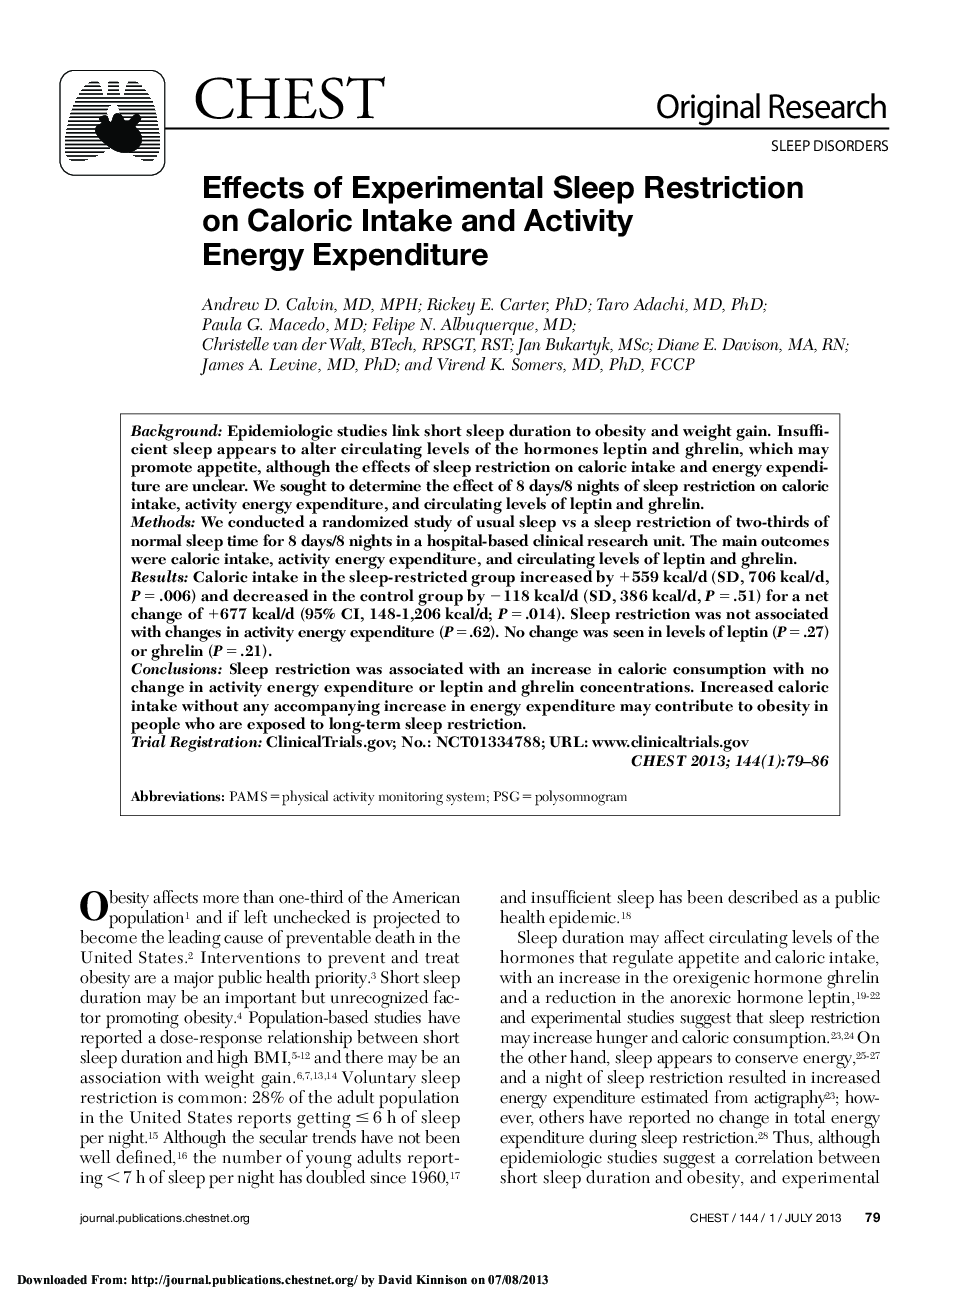 اثرات محدودیت خواب آزمایشی بر مصرف انرژی کالری و فعالیت انرژی 